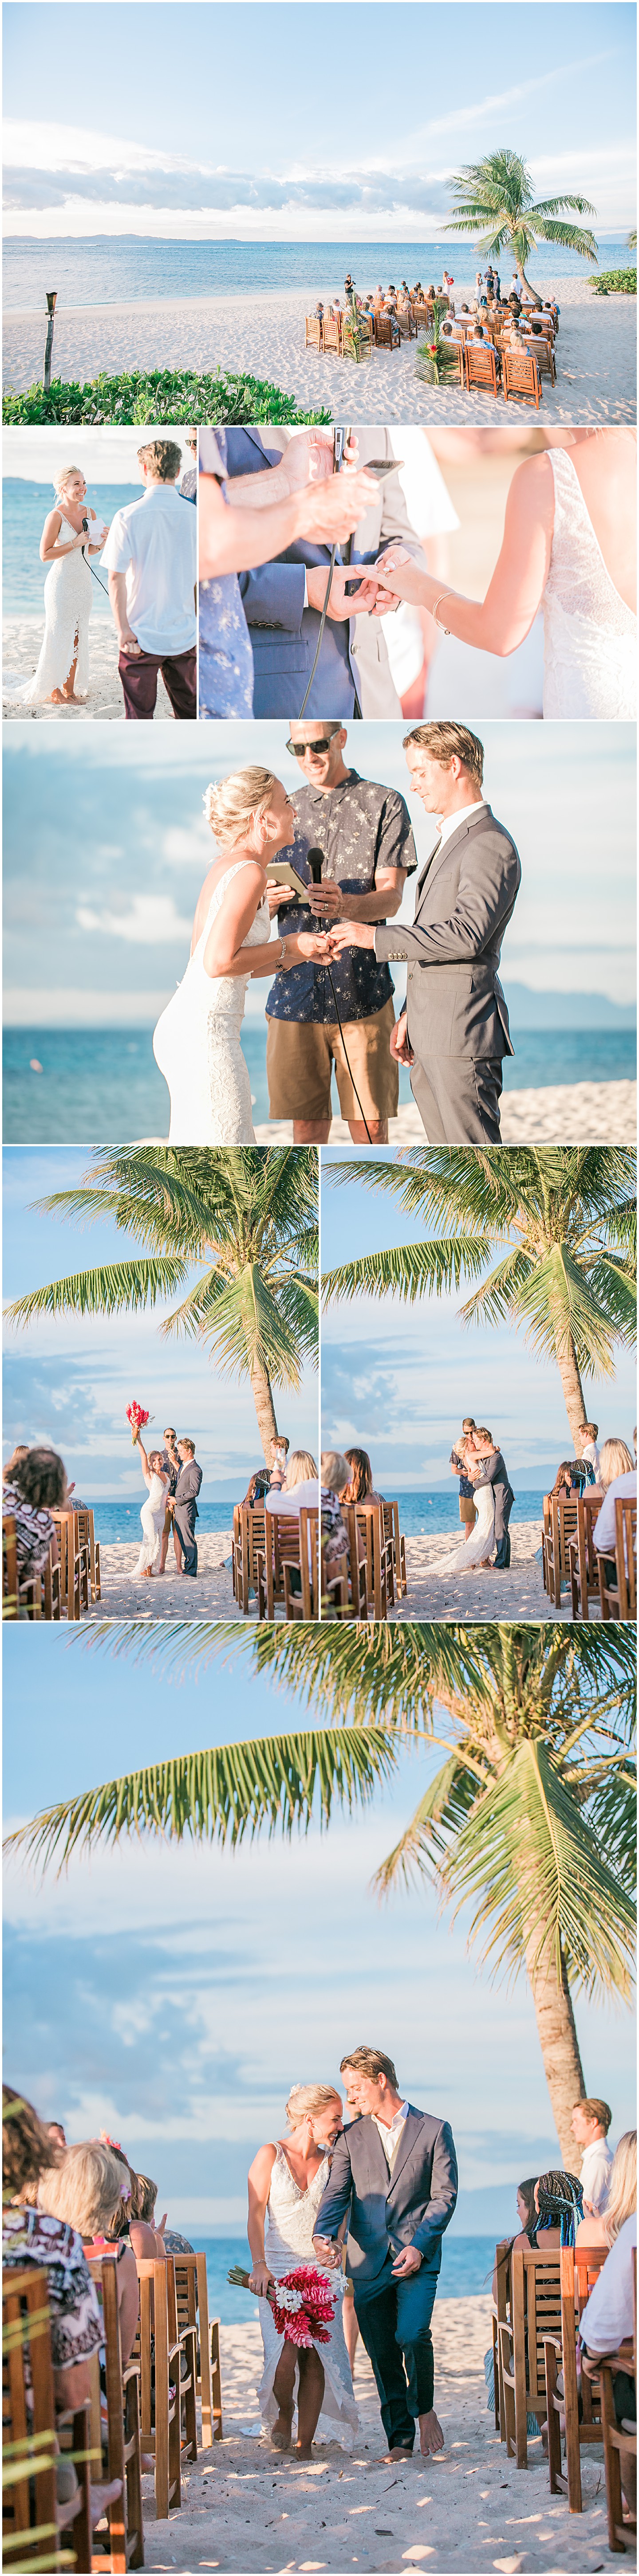 Tavarua Island Resort Wedding ceremony